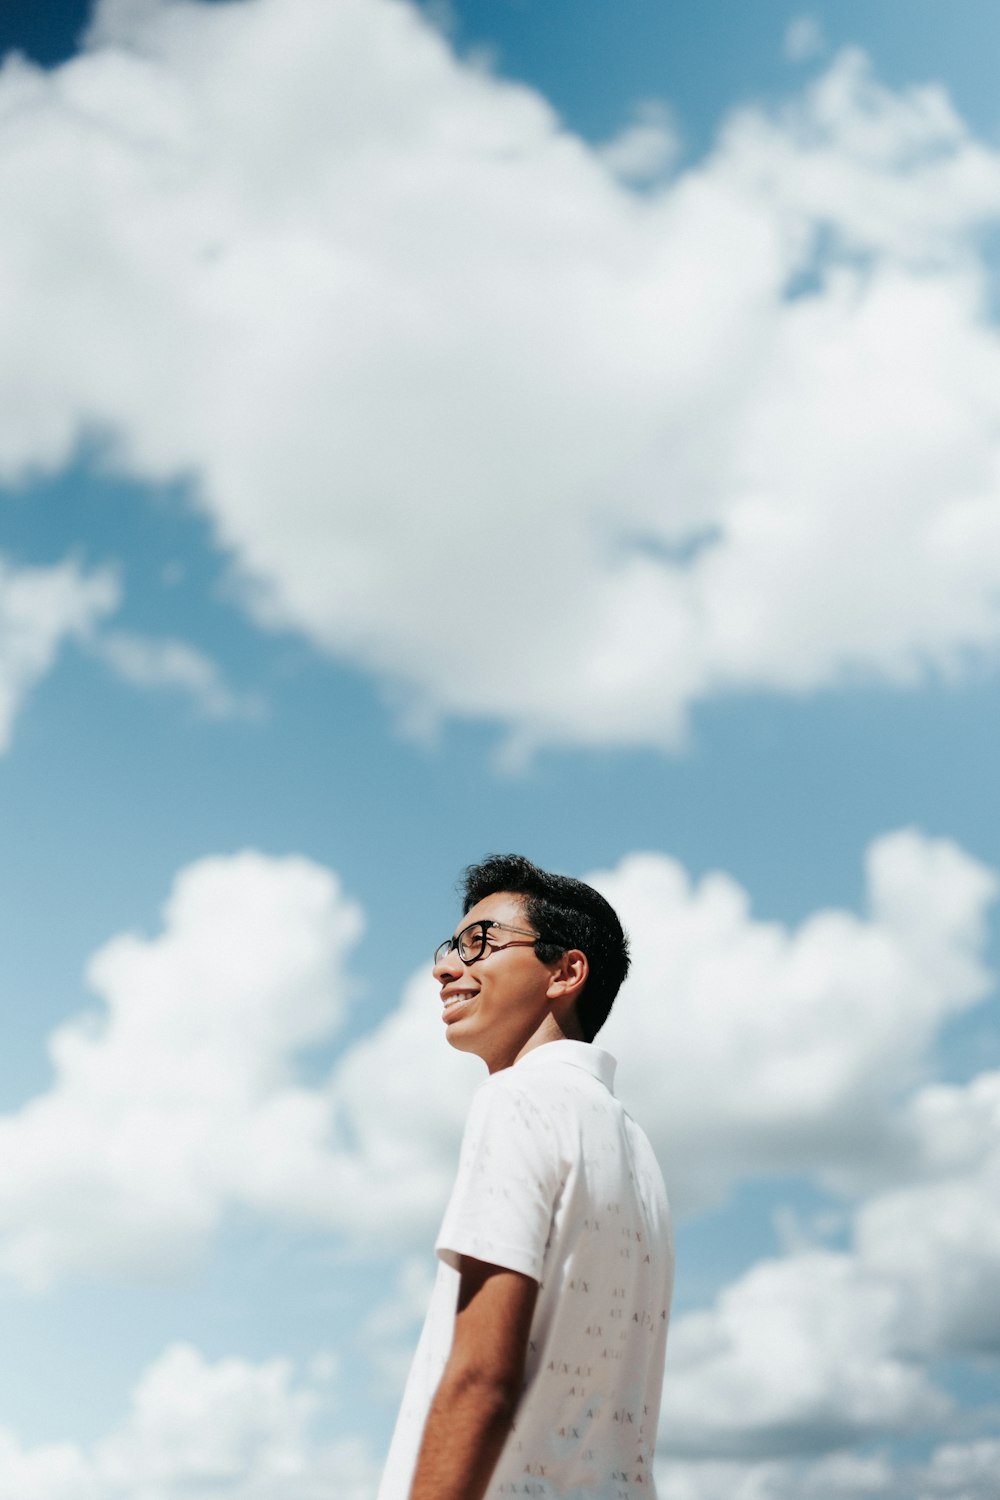 Un homme en chemise blanche et lunettes debout sous un ciel bleu nuageux